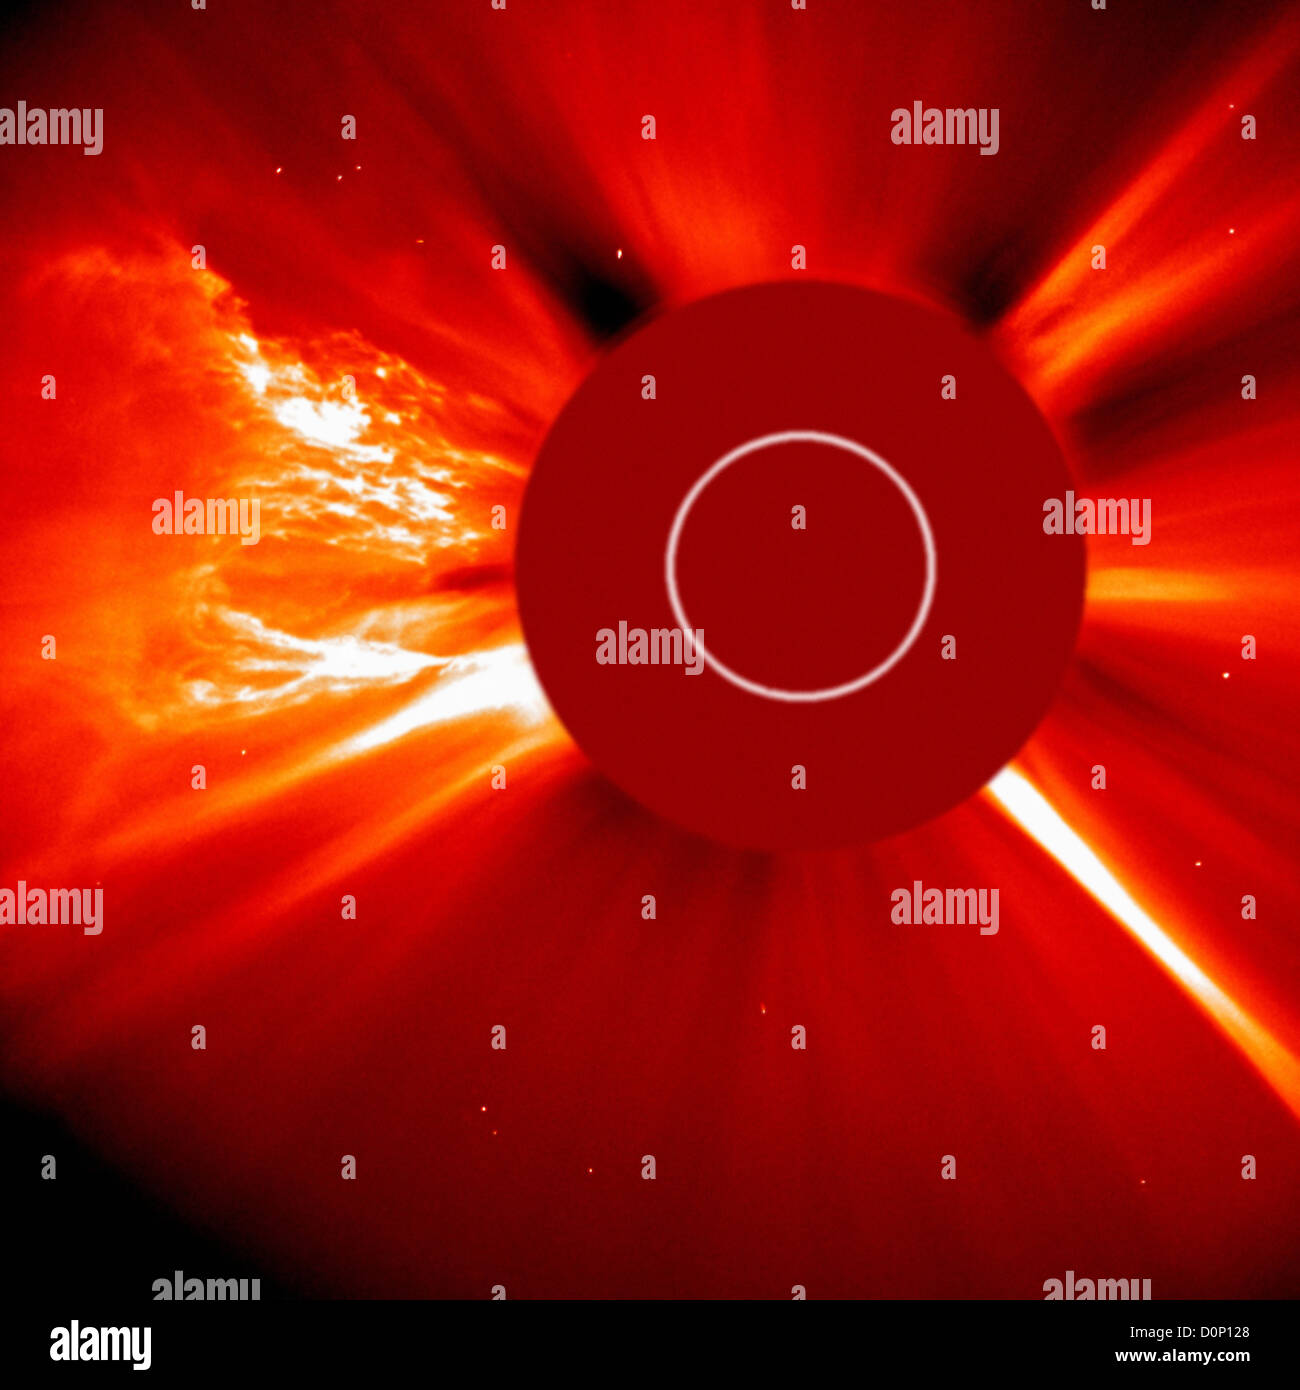 La C2 coronagraph Solar Heliospheric Observatory (SOHO) a capturé cette image très grande éjection de masse coronale en éruption solaire Banque D'Images